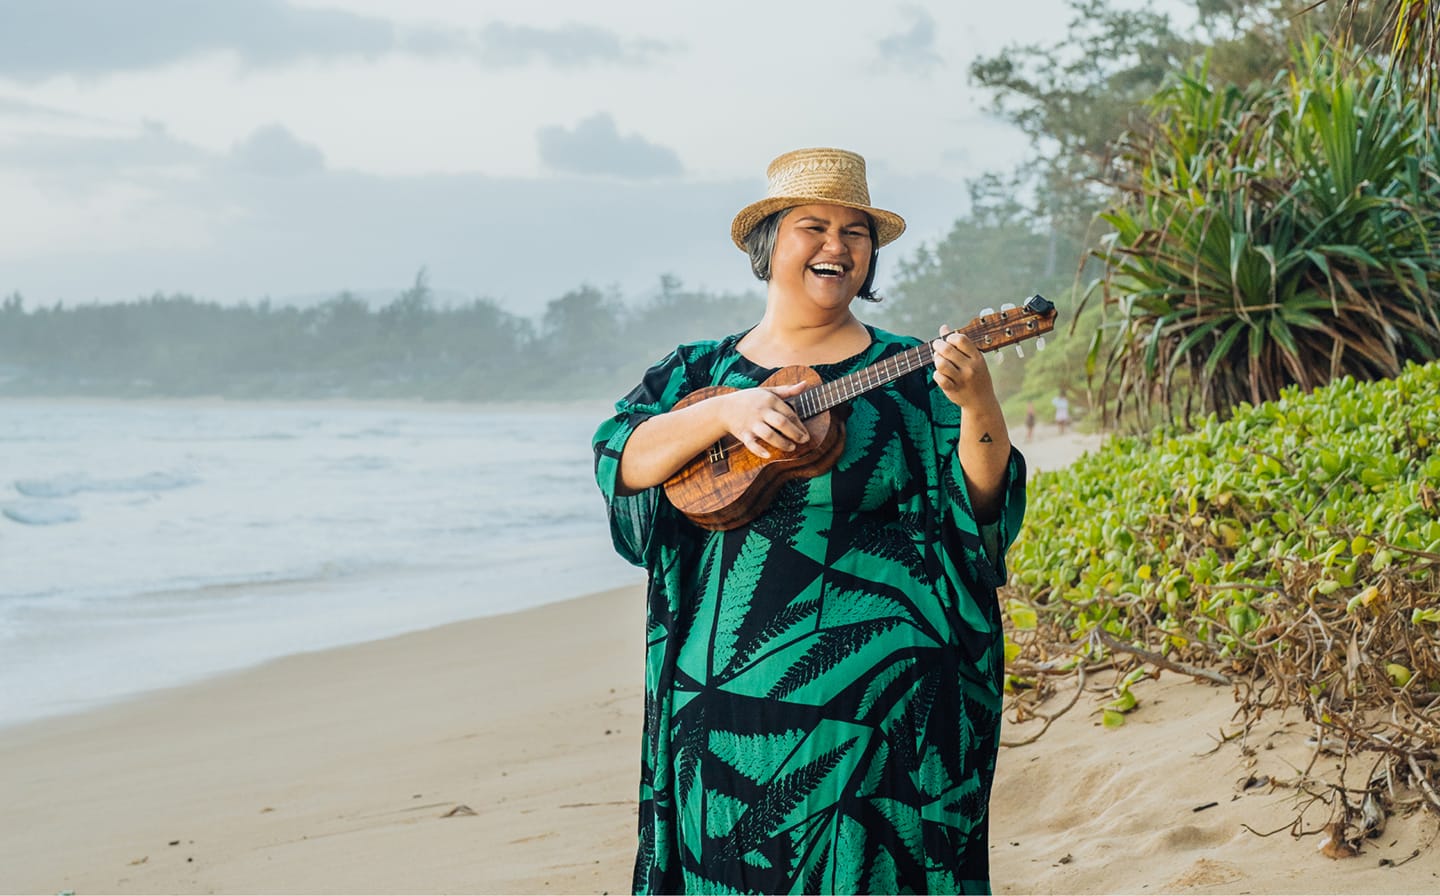 <small>Love in Action	</small></br>Die Musikerin Paula Fuga singt nicht nur von einer besseren Welt, sondern setzt sich mit Hilfe von Subaru Hawai‘i auch dafür ein. Bei der gemeinsamen Aktion „Love in Action“ besuchte Paula Fuga fünf Wohltätigkeits-Organisationen, stellte die Helfer vor und trommelte für Spenden. Subaru Hawai‘i verdoppelte den Beitrag der Spender für die fünf Organisationen bis zu einer Höhe von je 10.000 Dollar. „Erfolg verpflichtet, der Gemeinschaft auch etwas zurückzugeben“, sagt Paula Fuga.